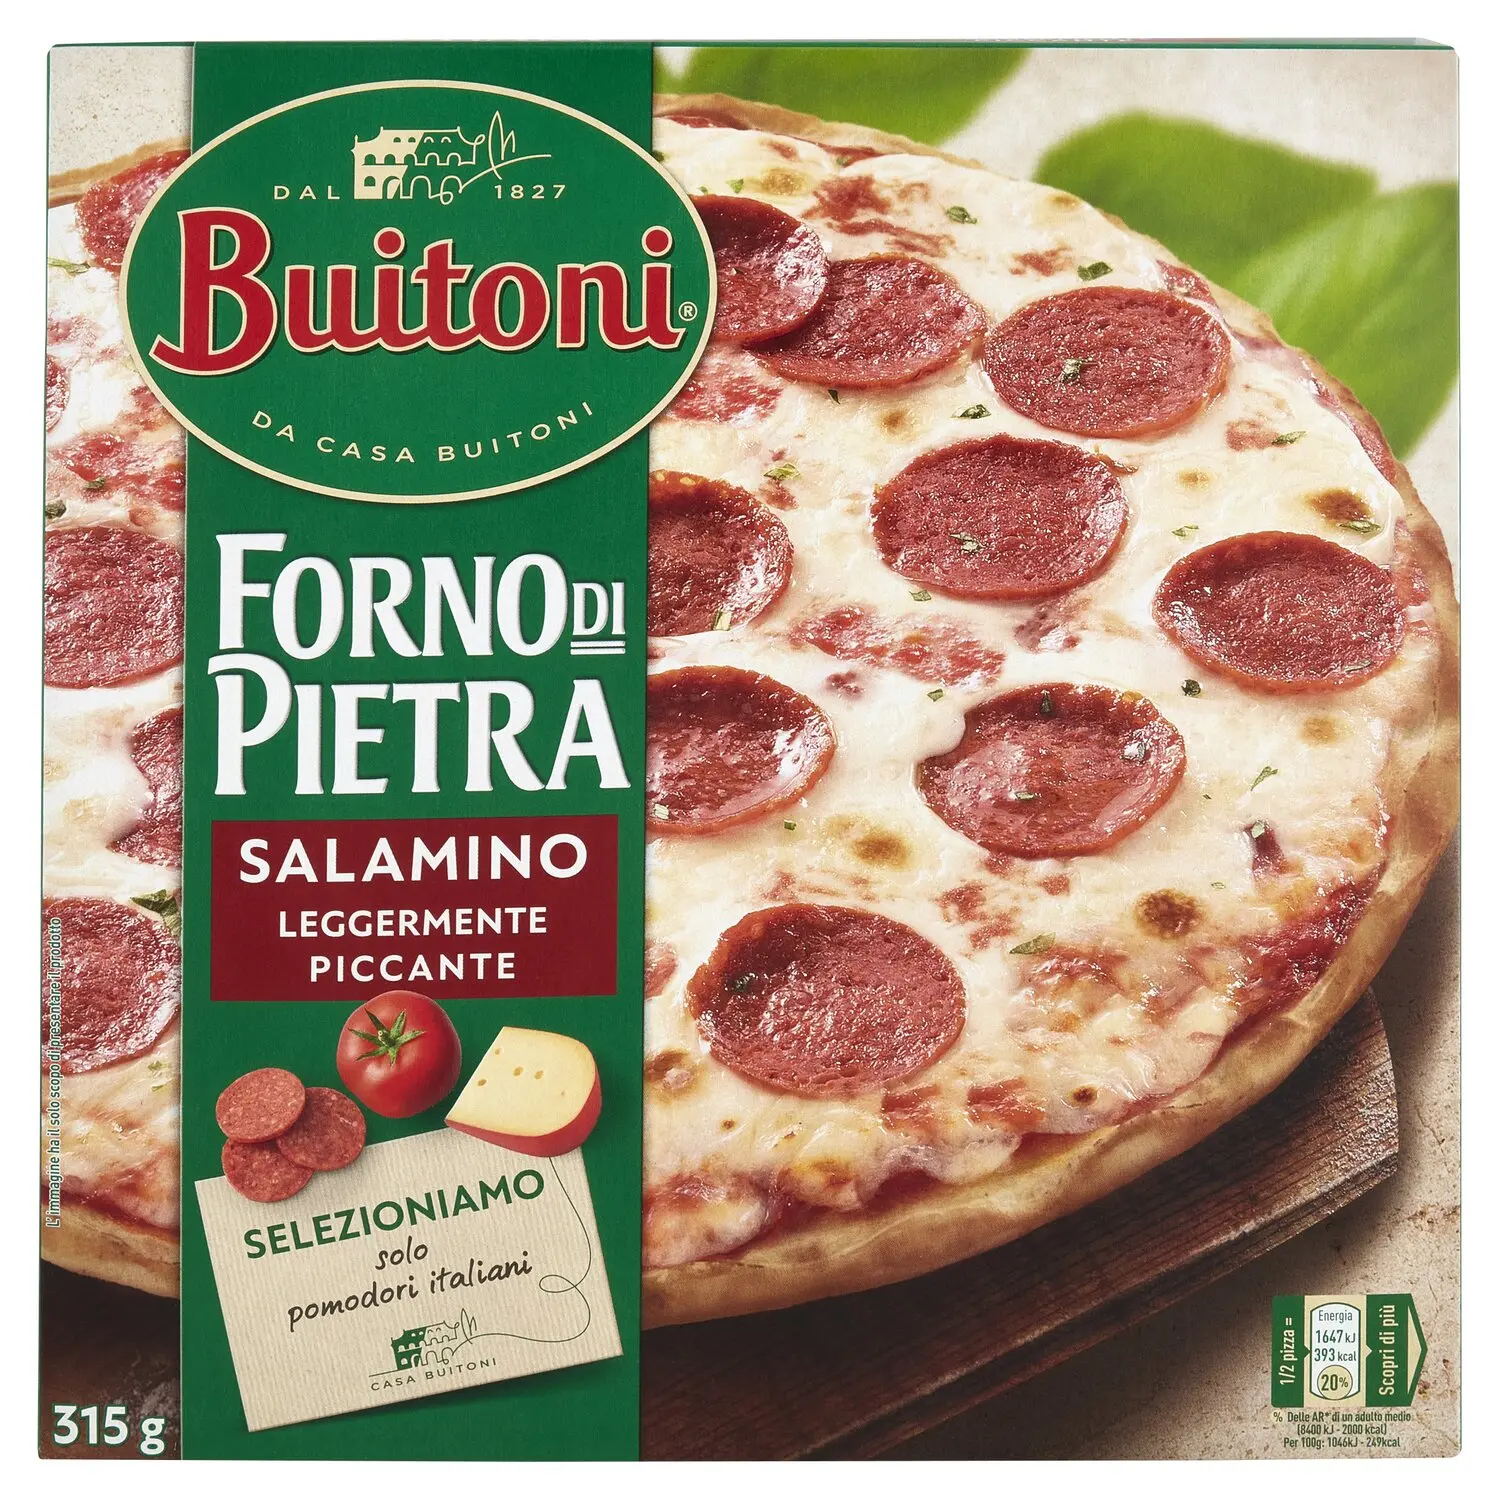 BUITONI Forno di Pietra Pizza Salamino Leggermente Piccante Pizza surgelata  (1 pizza) 315g